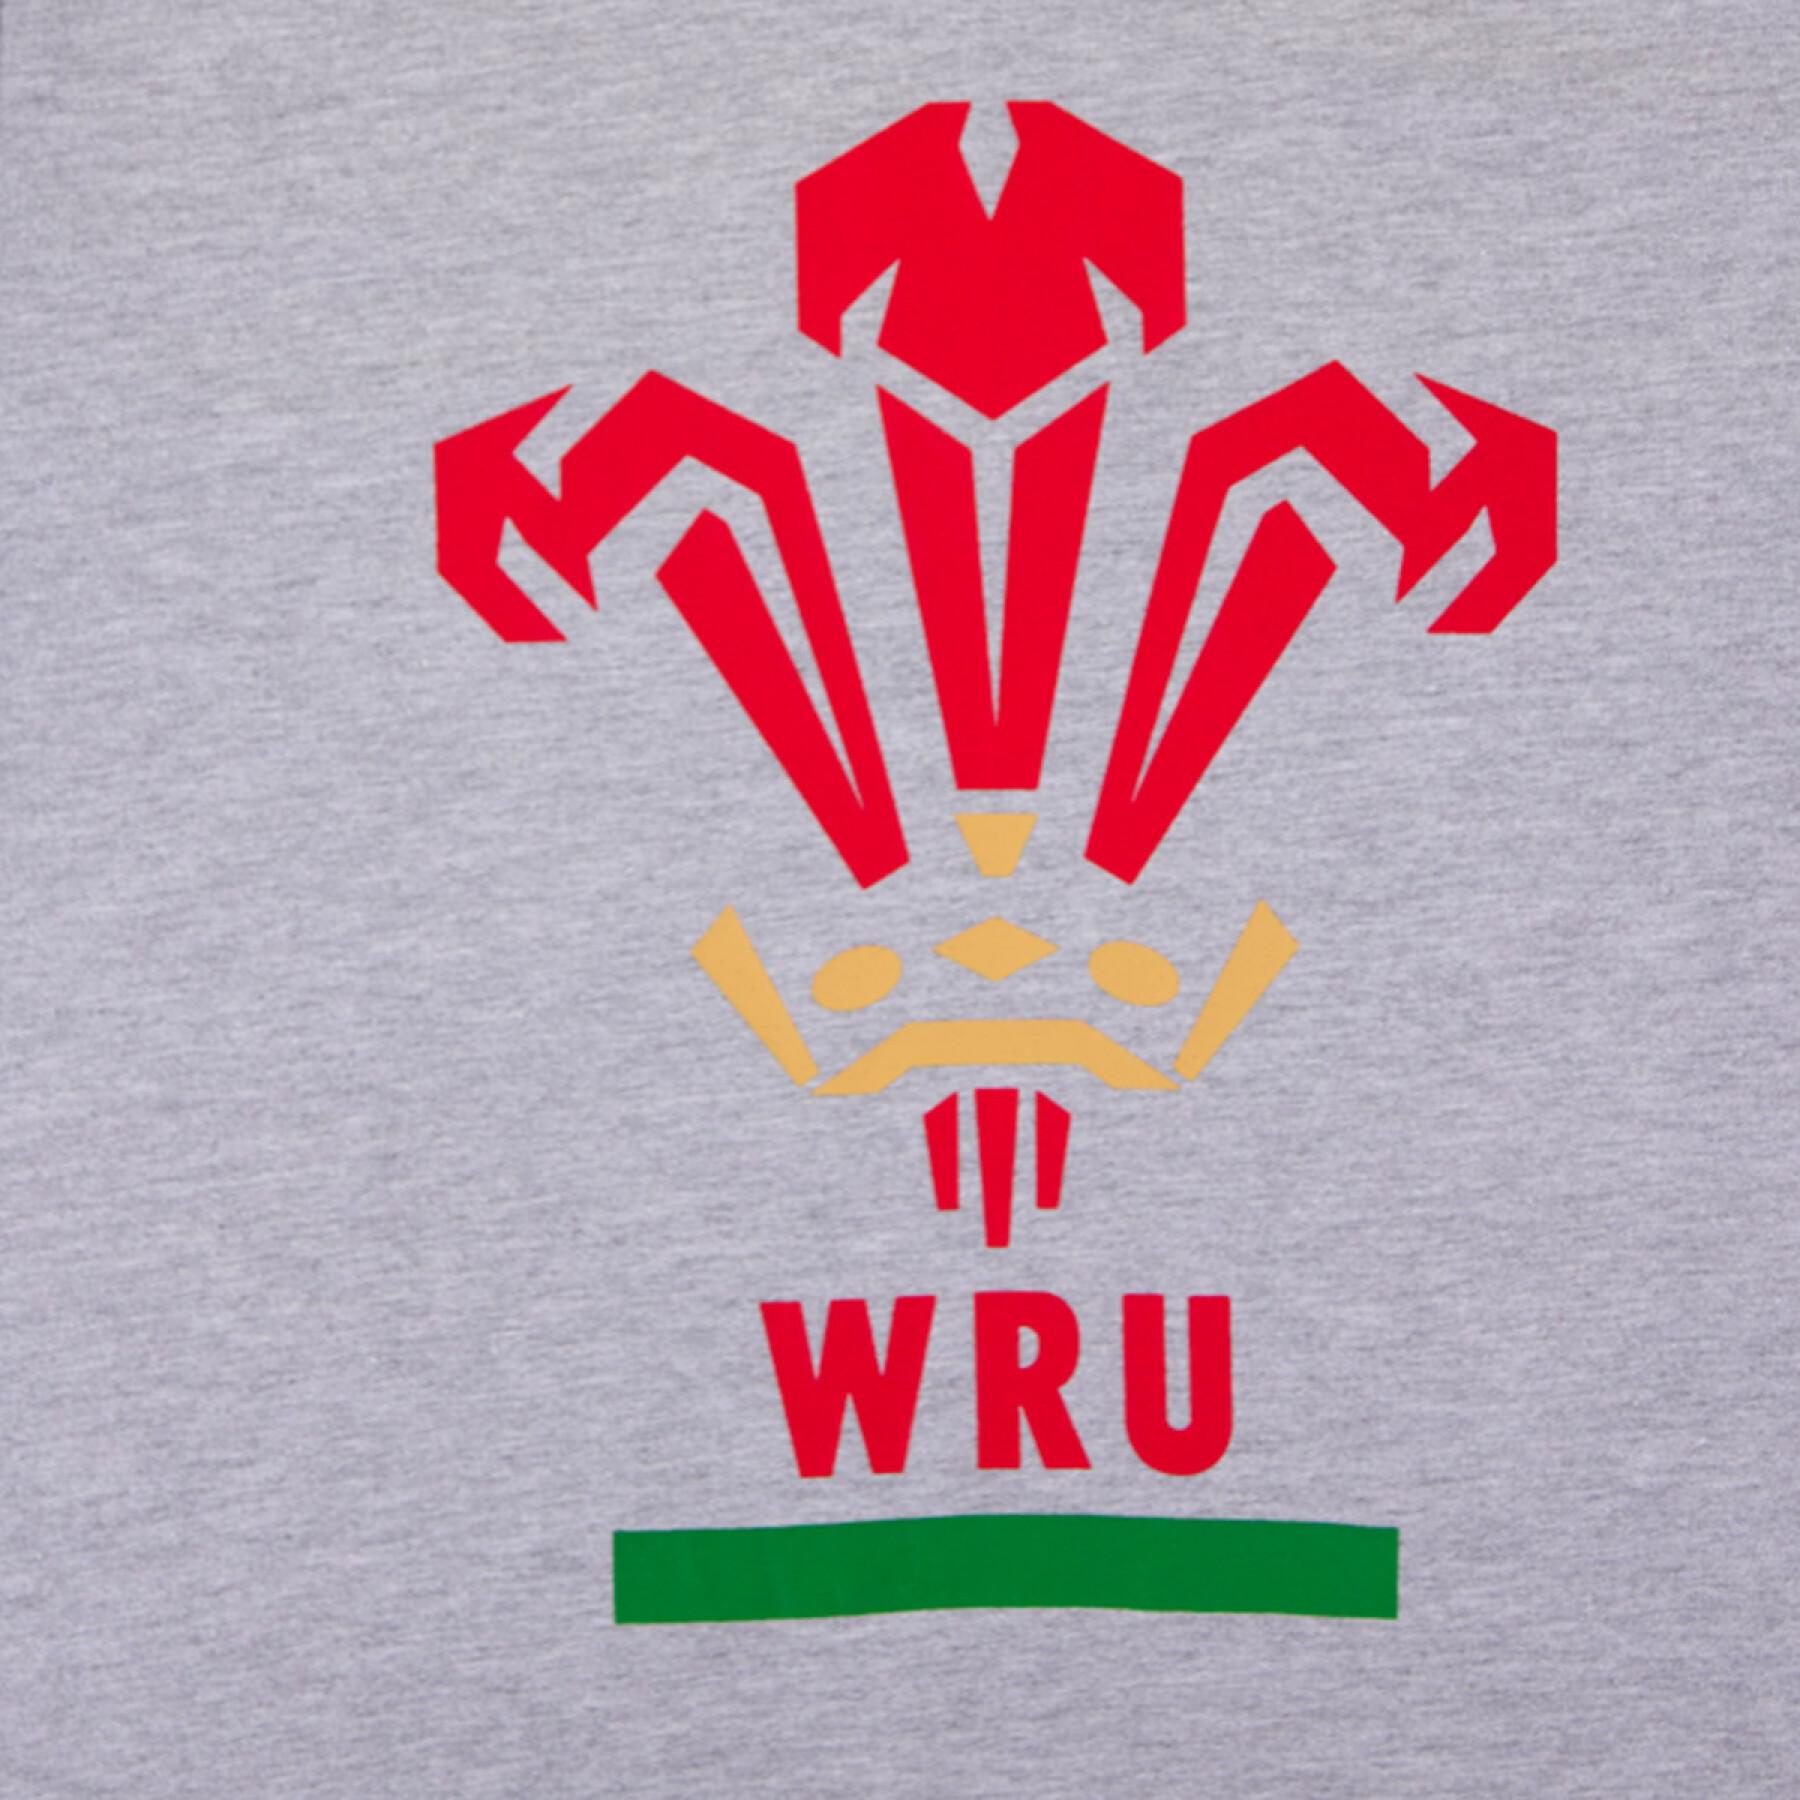 Camiseta de algodón Pays de Galles Rugby XV